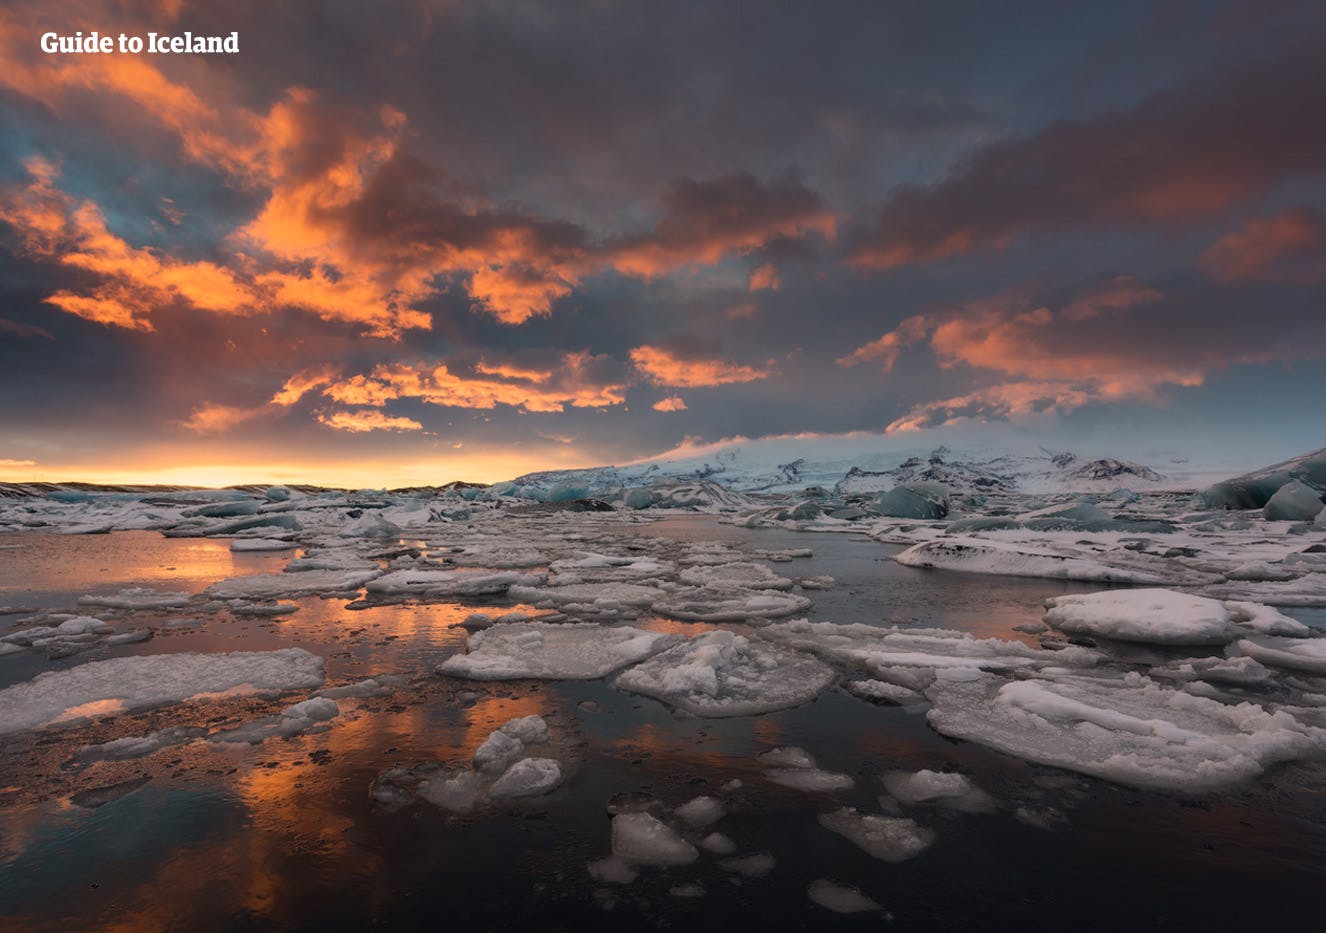 De Jokulsarlon-gletsjerlagune wordt vaak omschreven als het 'Kroonjuweel van IJsland'.